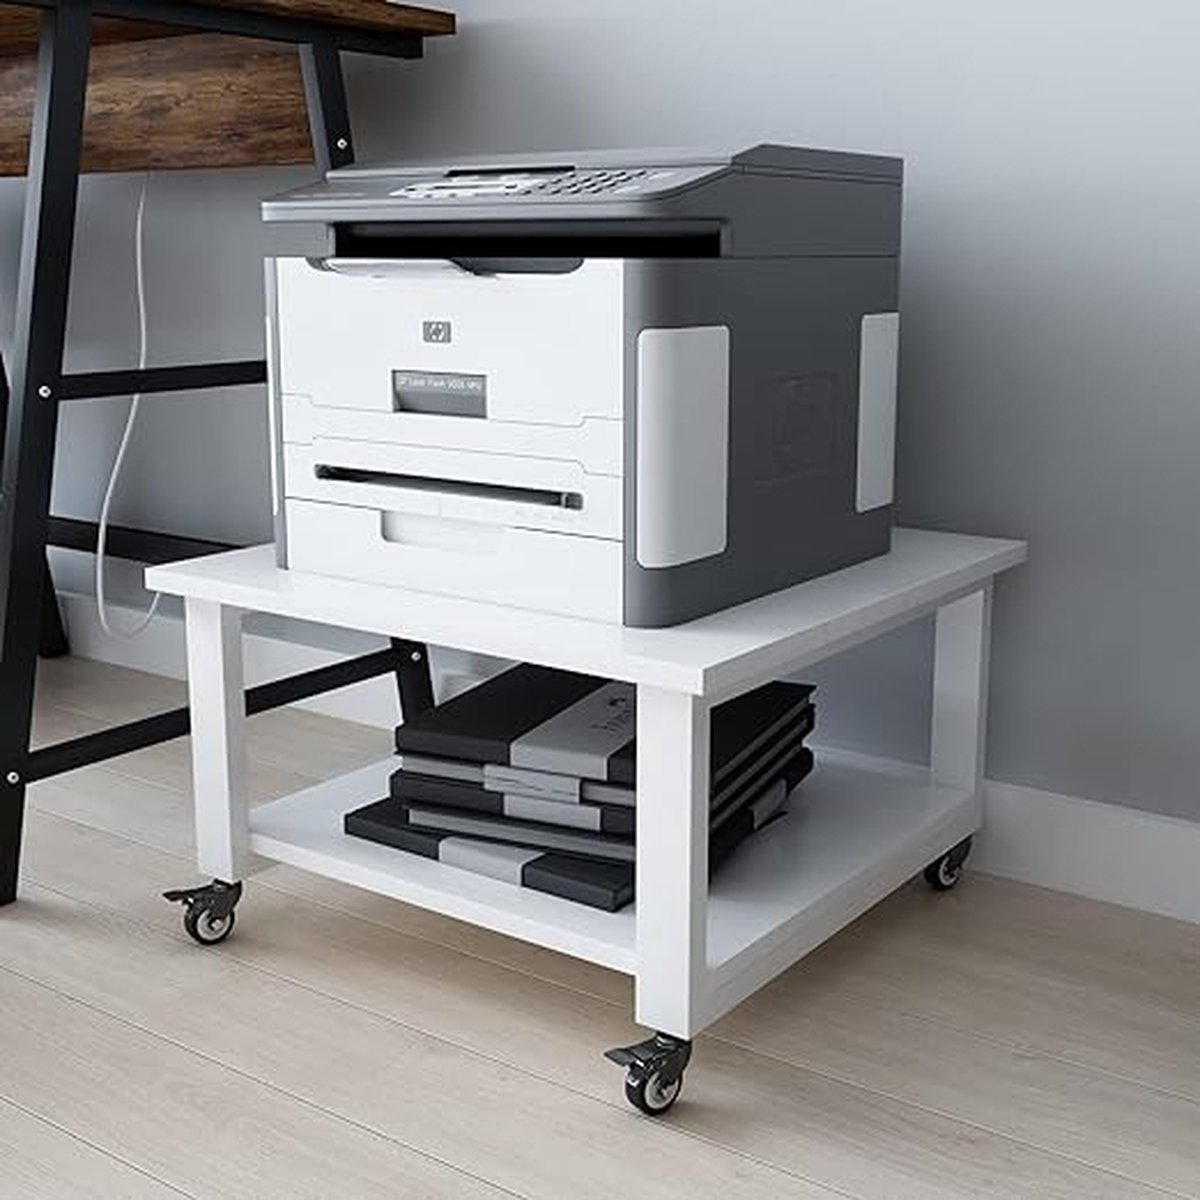 2-Tier Laser Printer Stand 50 * 50 * 30cm Grote Printer Tafel Copier Stand onder Bureau Heavy Duty Rolling Cart met Paper Storage Shelf Printer Houder op Wielen voor Home Office (Wit) - Merkloos